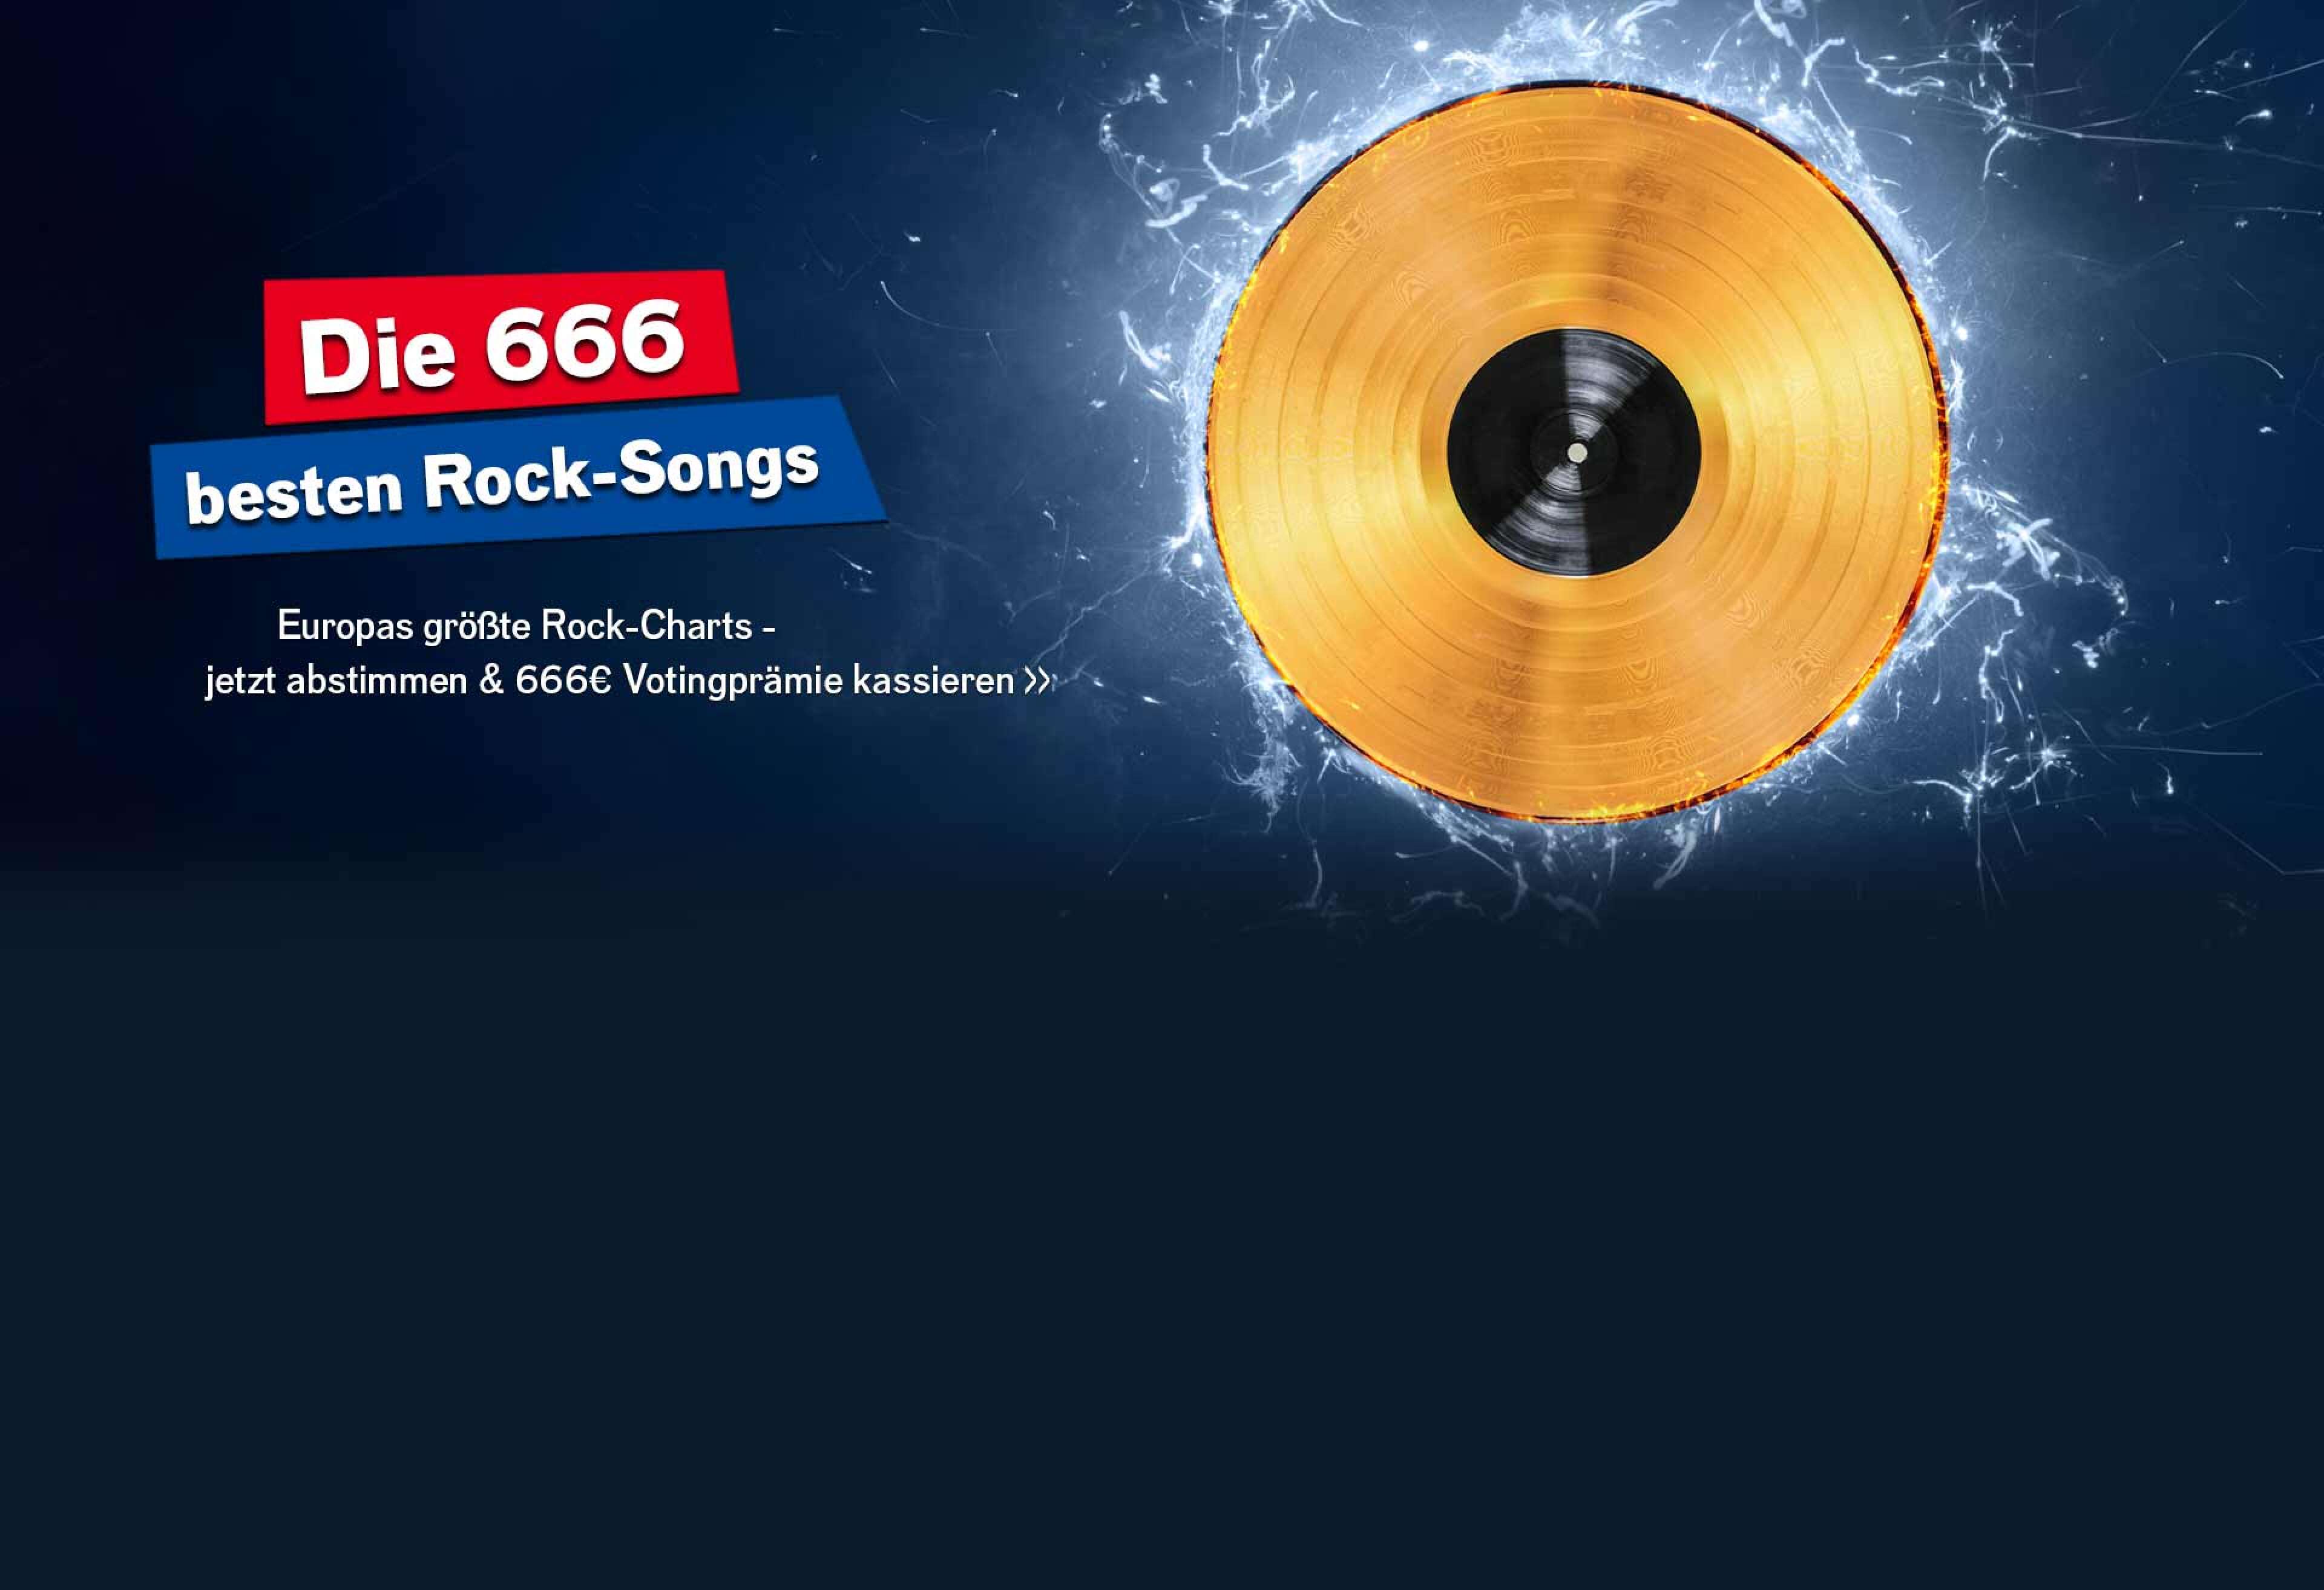 Eine goldene Schallplatte vor blauen Blitzen auf blauem Grund, dazu der Text Die 666 besten Rock-Songs, Europas größte Rock-Charts - jetzt abstimmen & 666 Euro Votingprämie kassieren